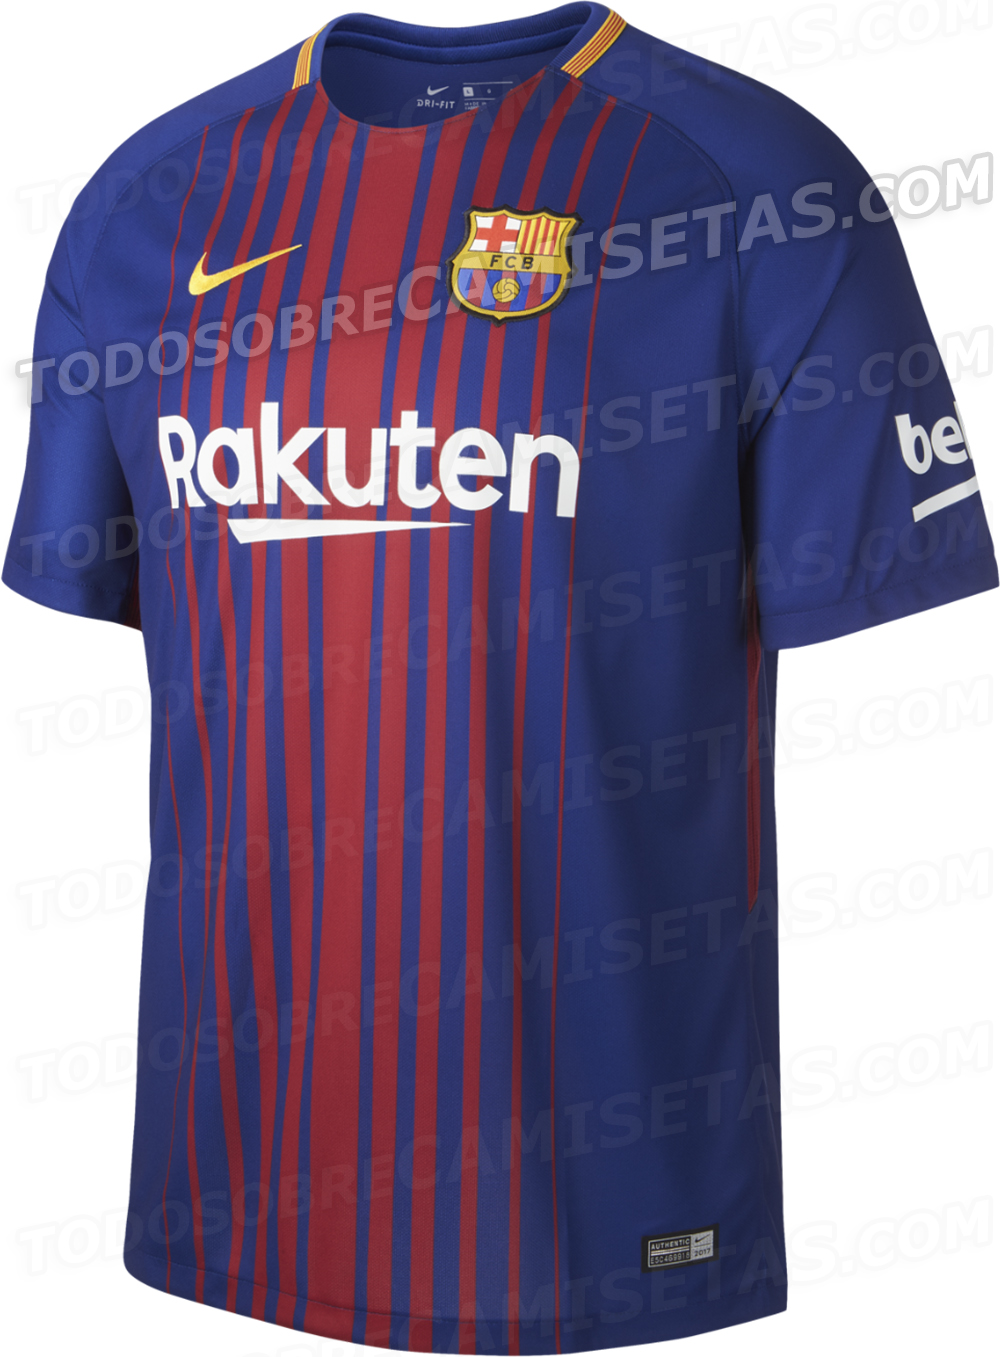 Continente Leopardo Agua con gas Camiseta Nike de FC Barcelona 2017-18 - Todo Sobre Camisetas